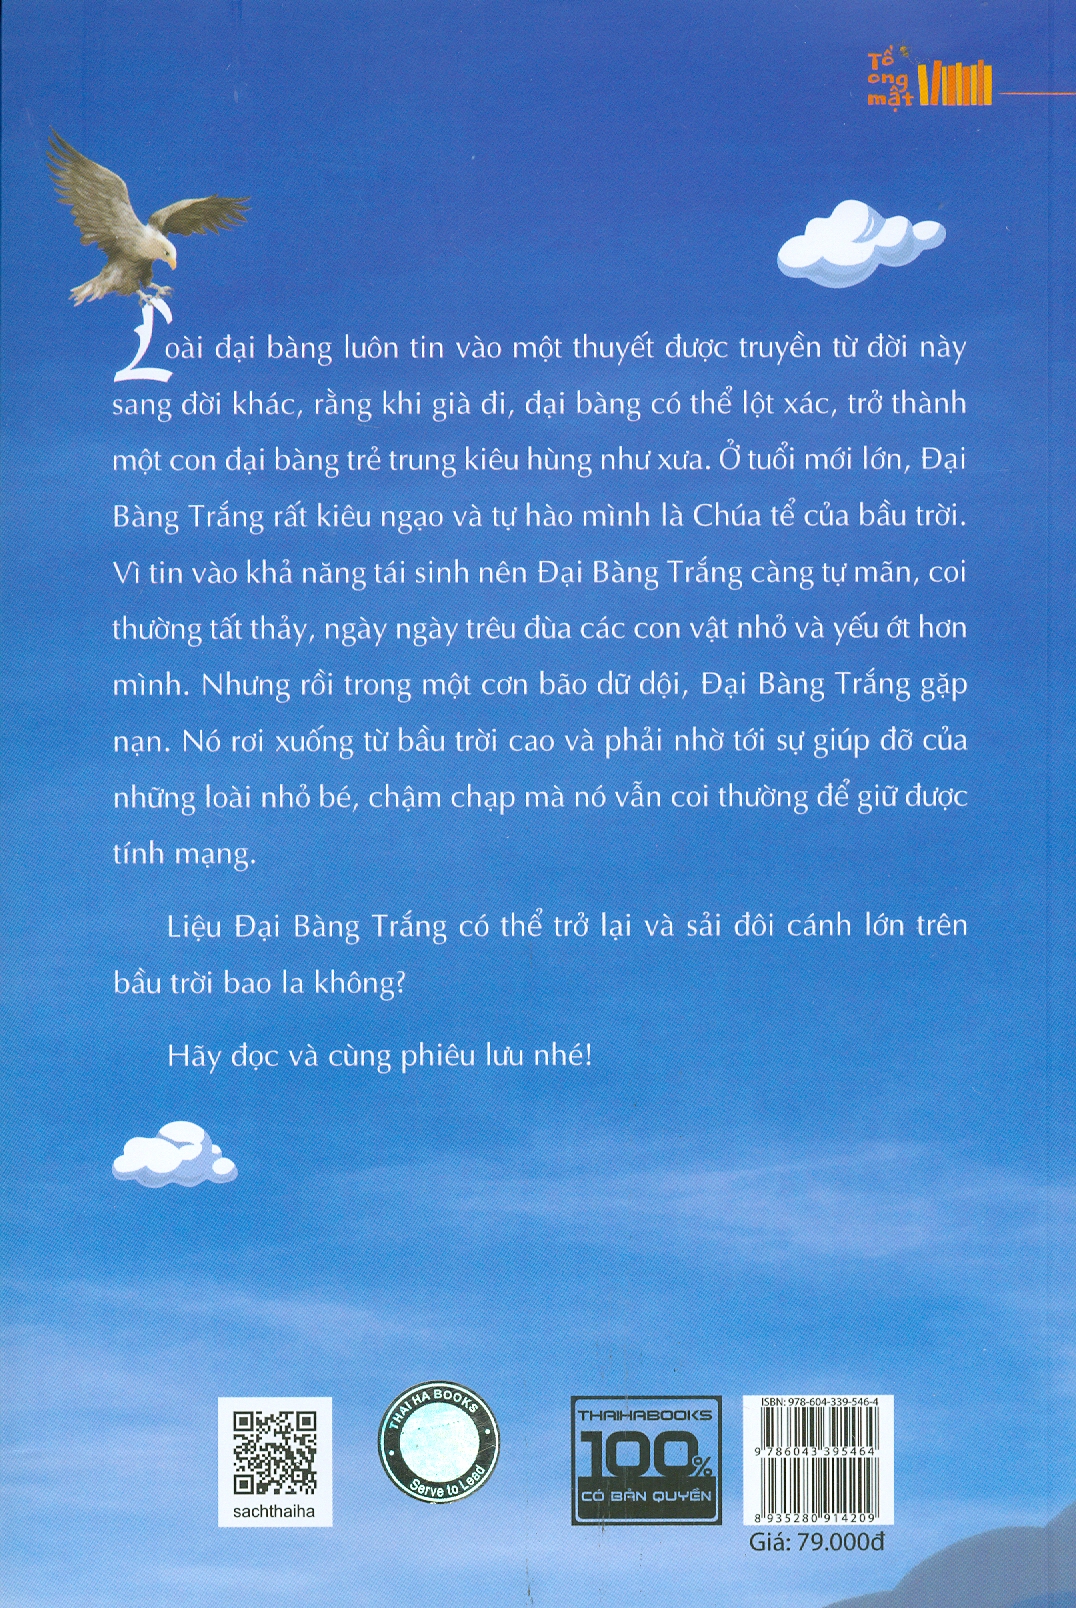 ĐẠI BÀNG TÁI SINH - Phạm Thị Thanh Hà – Kim Duẩn Minh hoạ   – Thái Hà - NXB Hà Nội